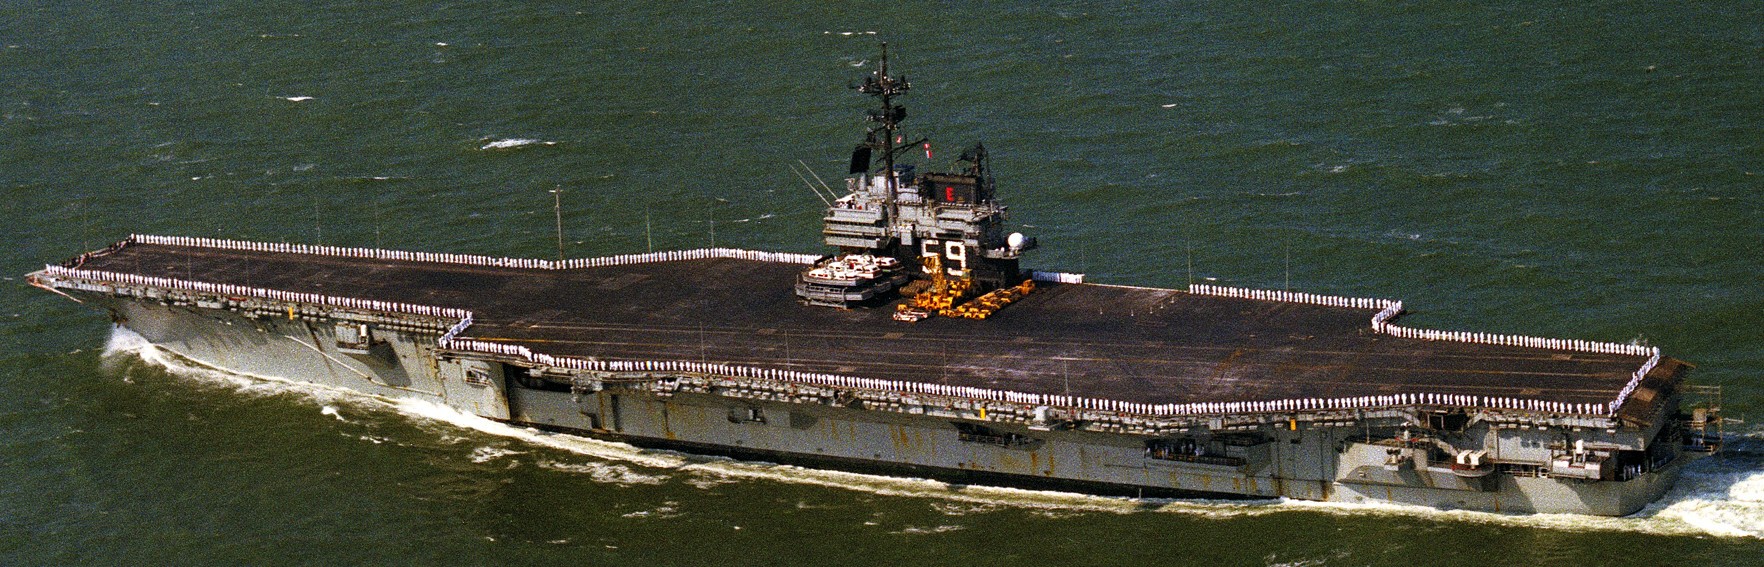 cv-59 uss forrestal aircraft carrier us navy 81